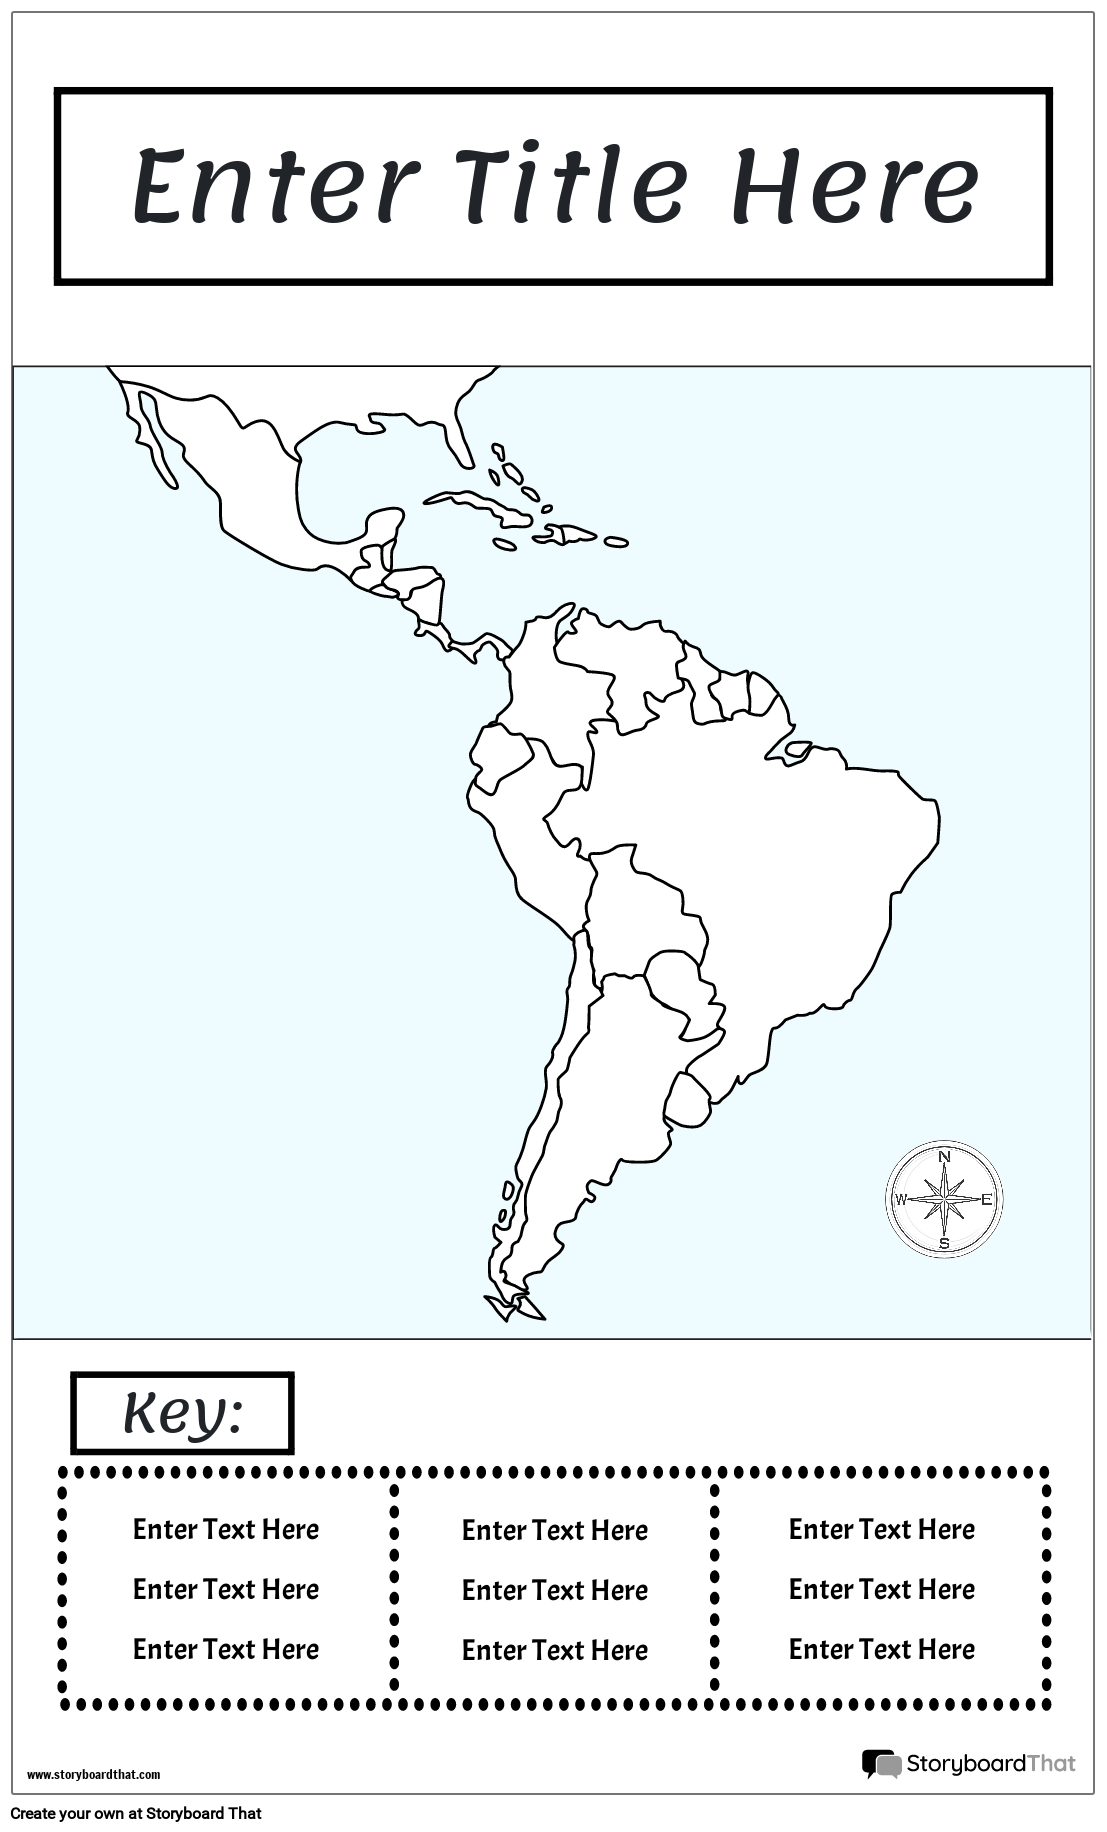 Karttajuliste 15 BW Portrait-Keski- ja Etelä-Amerikka